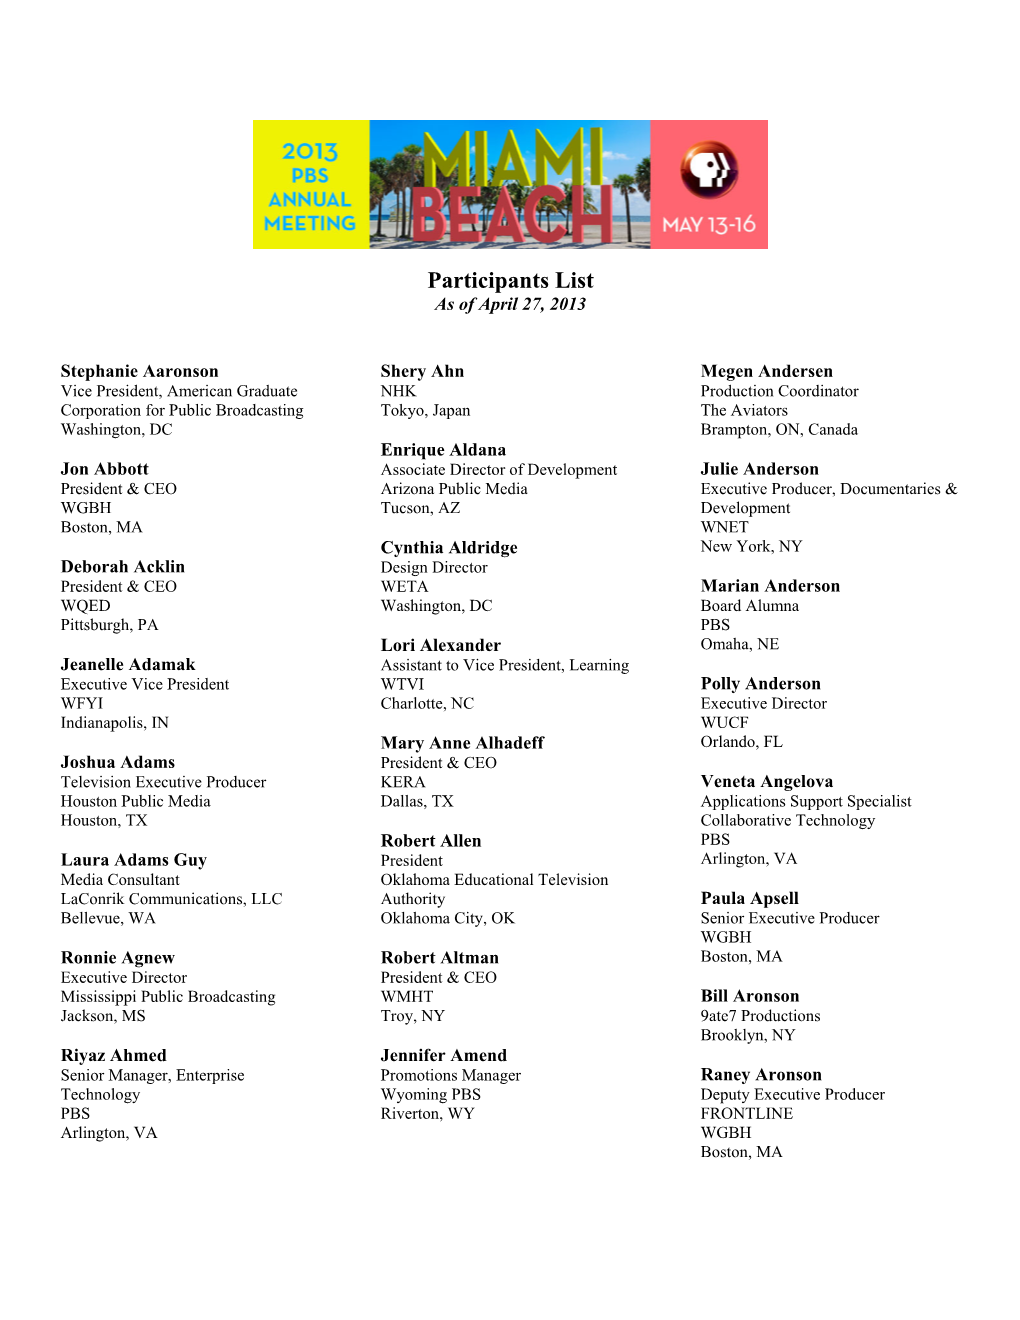 Participants List As of April 27, 2013